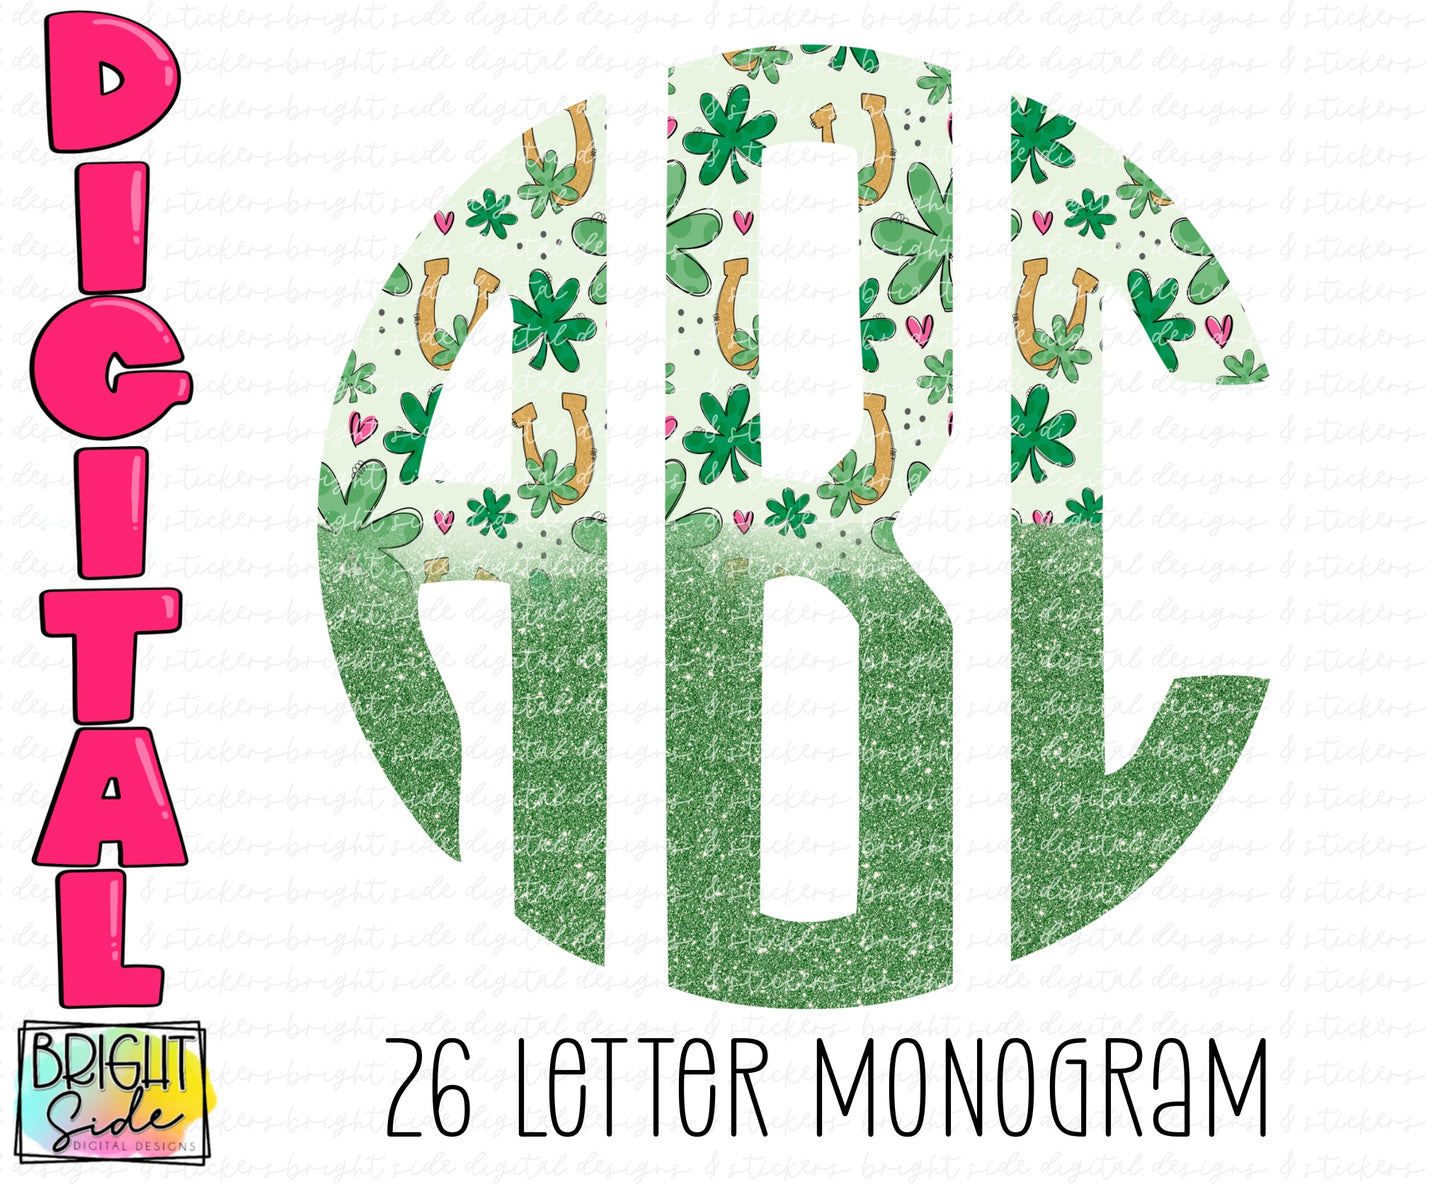 St. Patrick’s Day Monogram